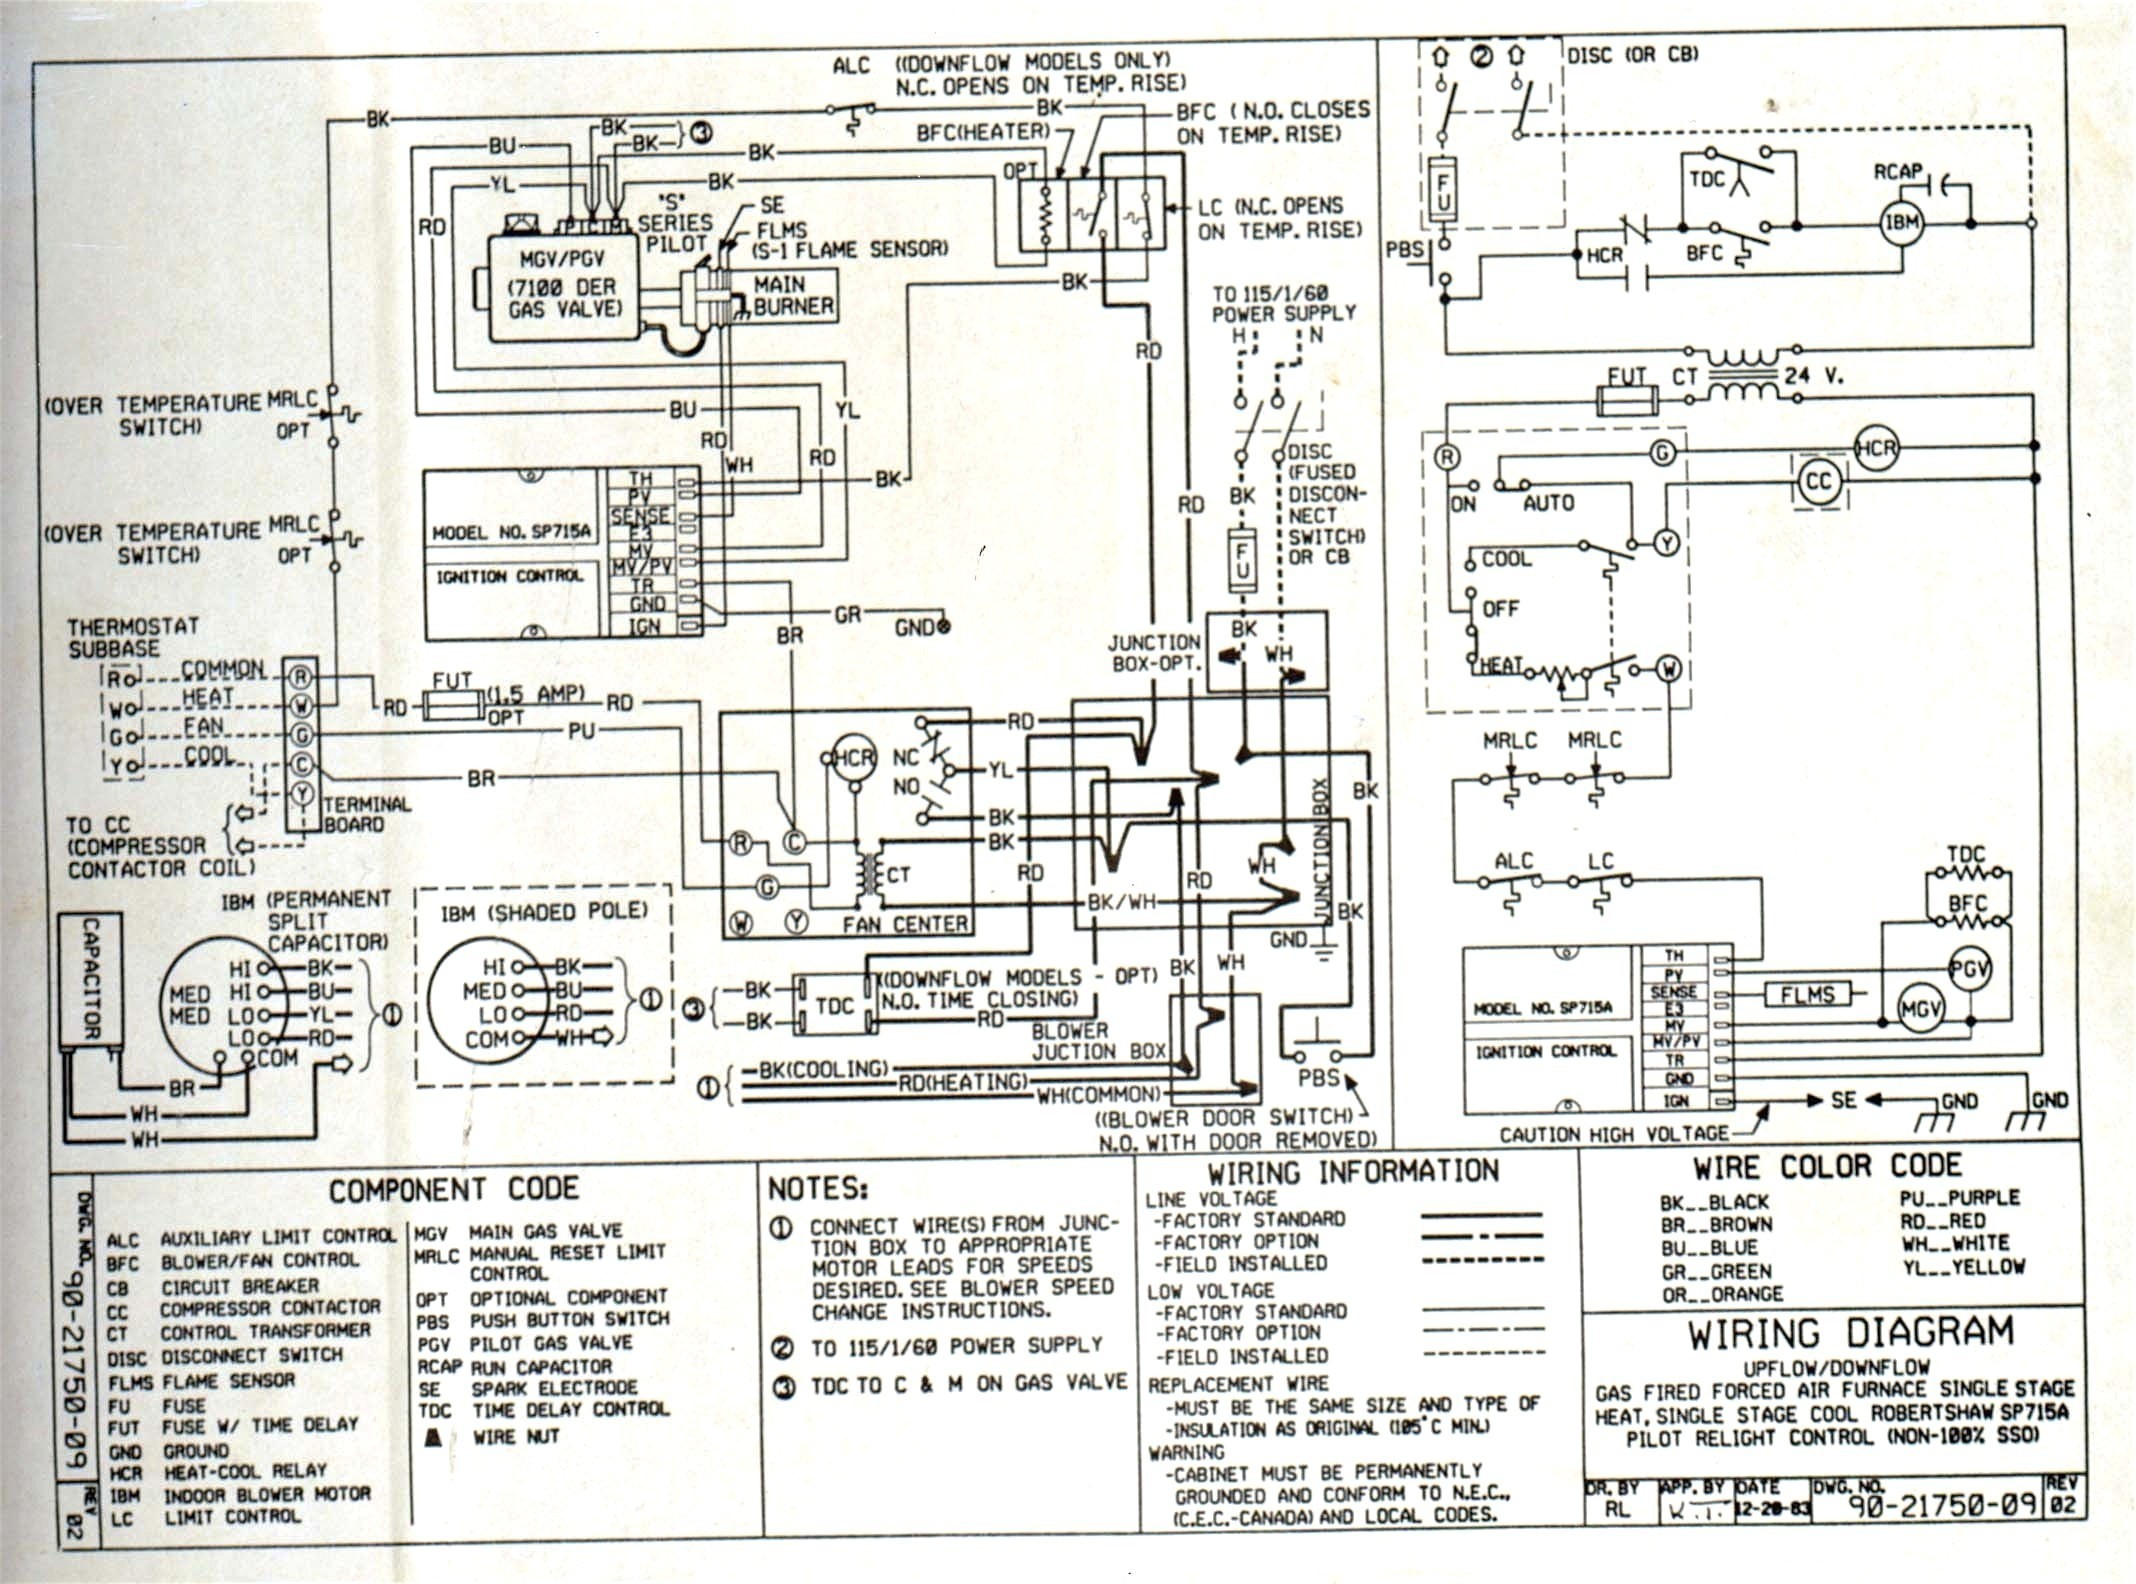 Wiring Diagram for pressor Relay Fresh Wiring Diagram Air Conditioning Pressor Fresh Wiring Diagram Ac